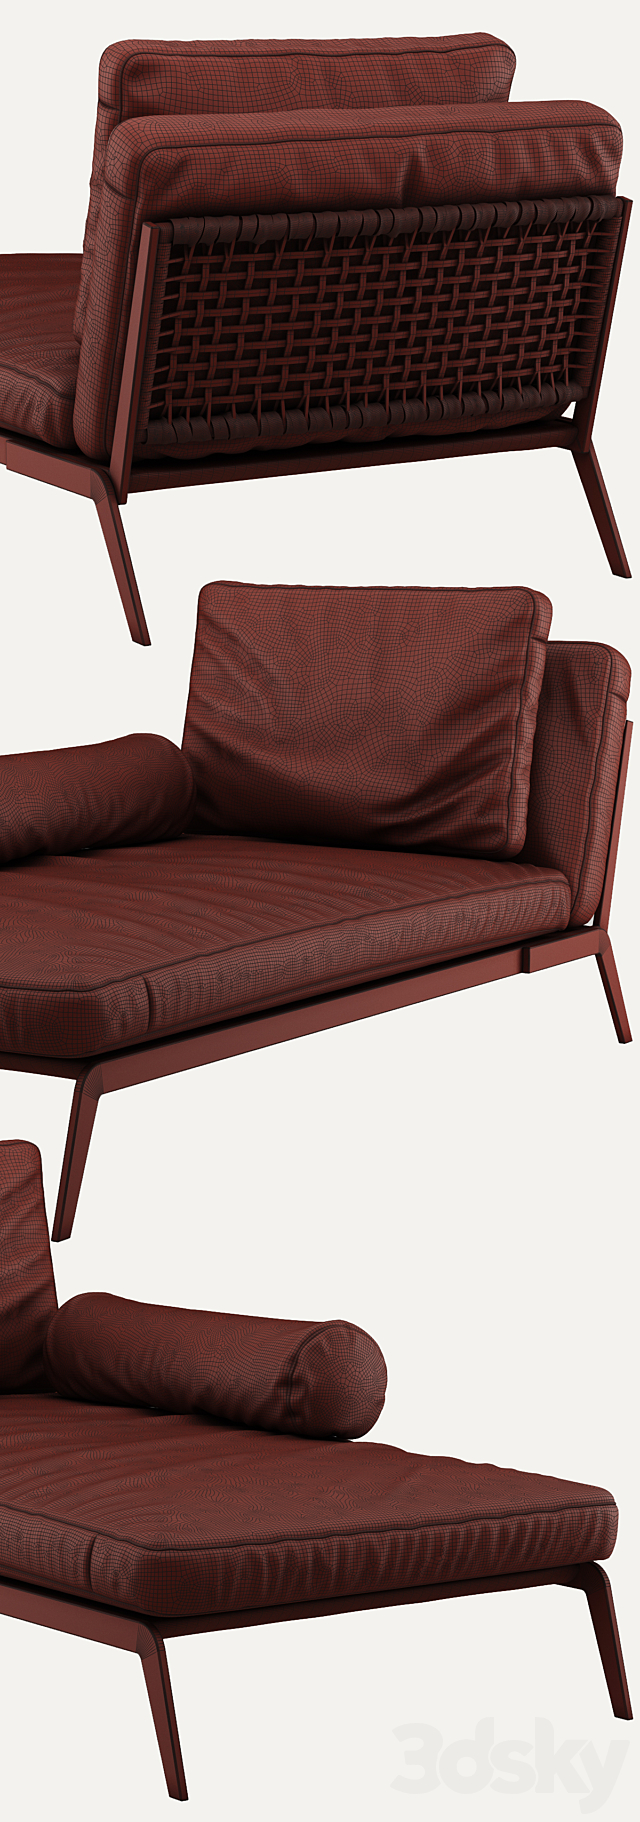 Camerich LA Arc Lounge Chair 3DSMax File - thumbnail 3